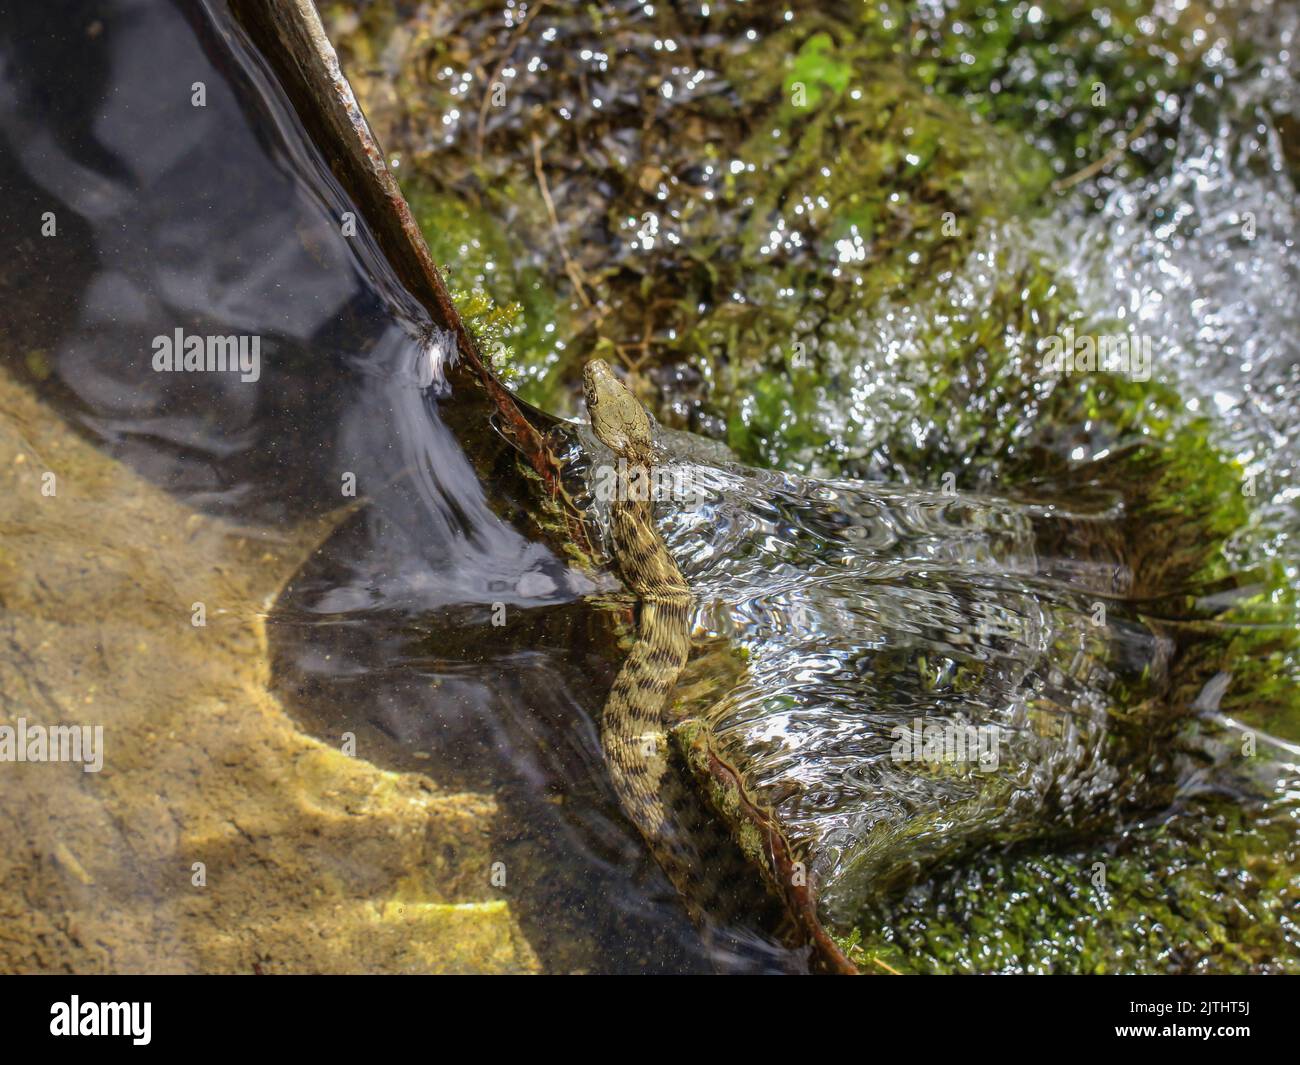 Dice snake, latin name: Natrix tessellata in a stream in Tara National Park in Serbia Stock Photo